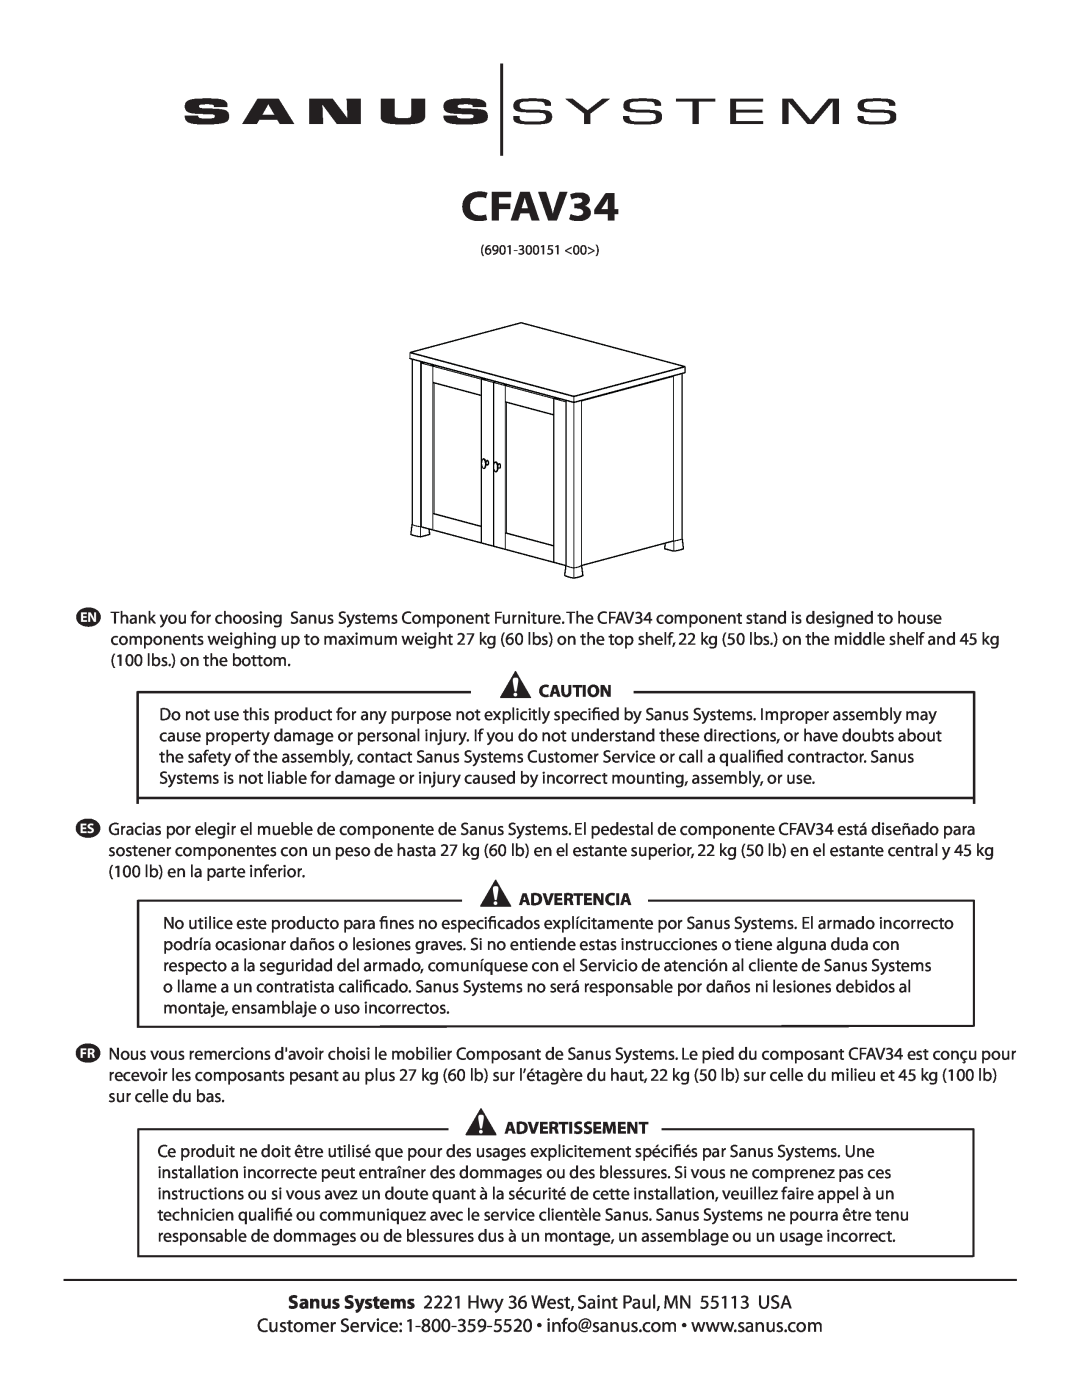 Sanus Systems CFAV34 manual Advertencia, Advertissement 